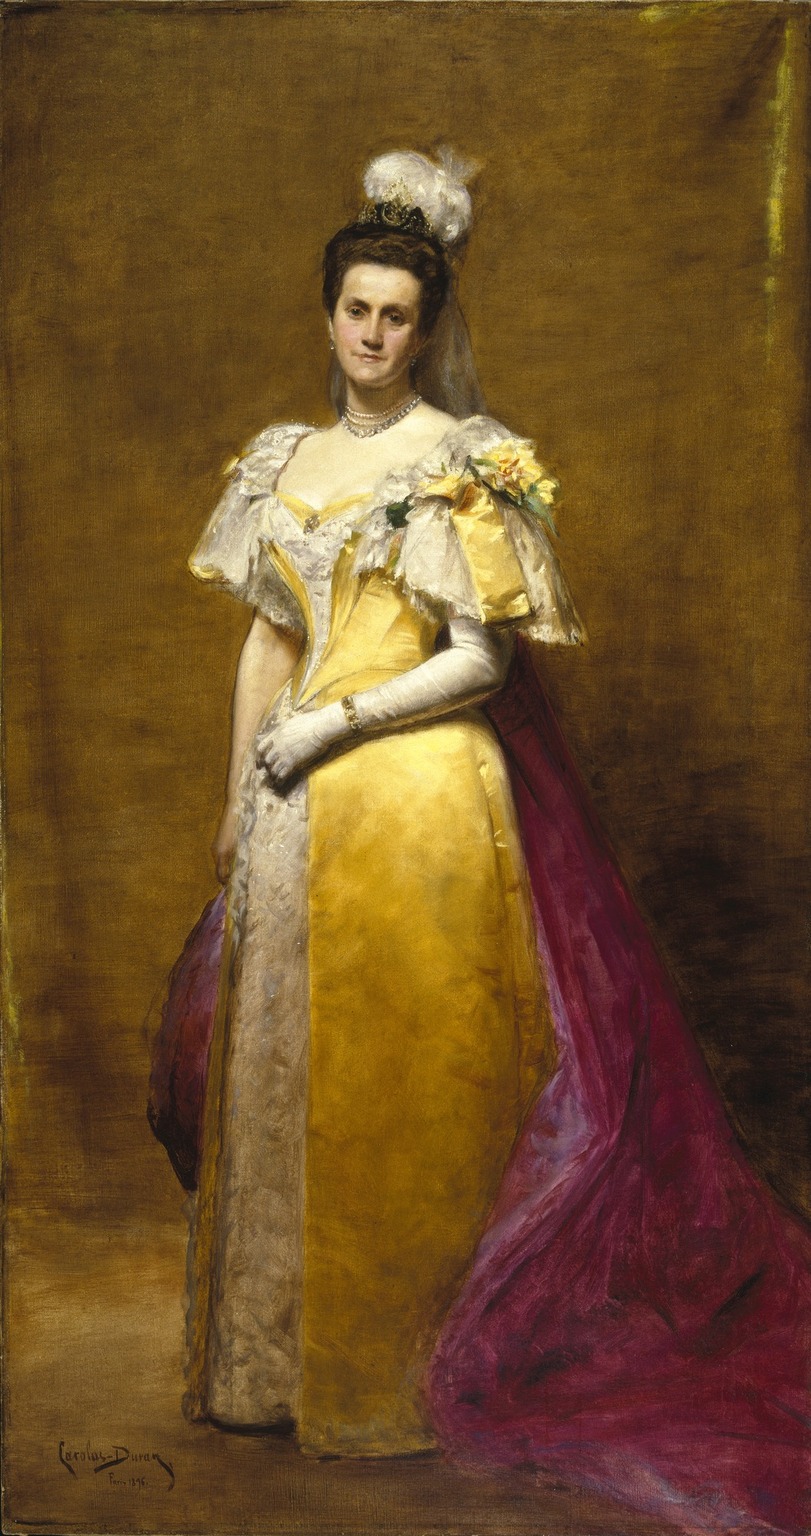 Un cuadro de una mujer con un vestido amarillo posando.